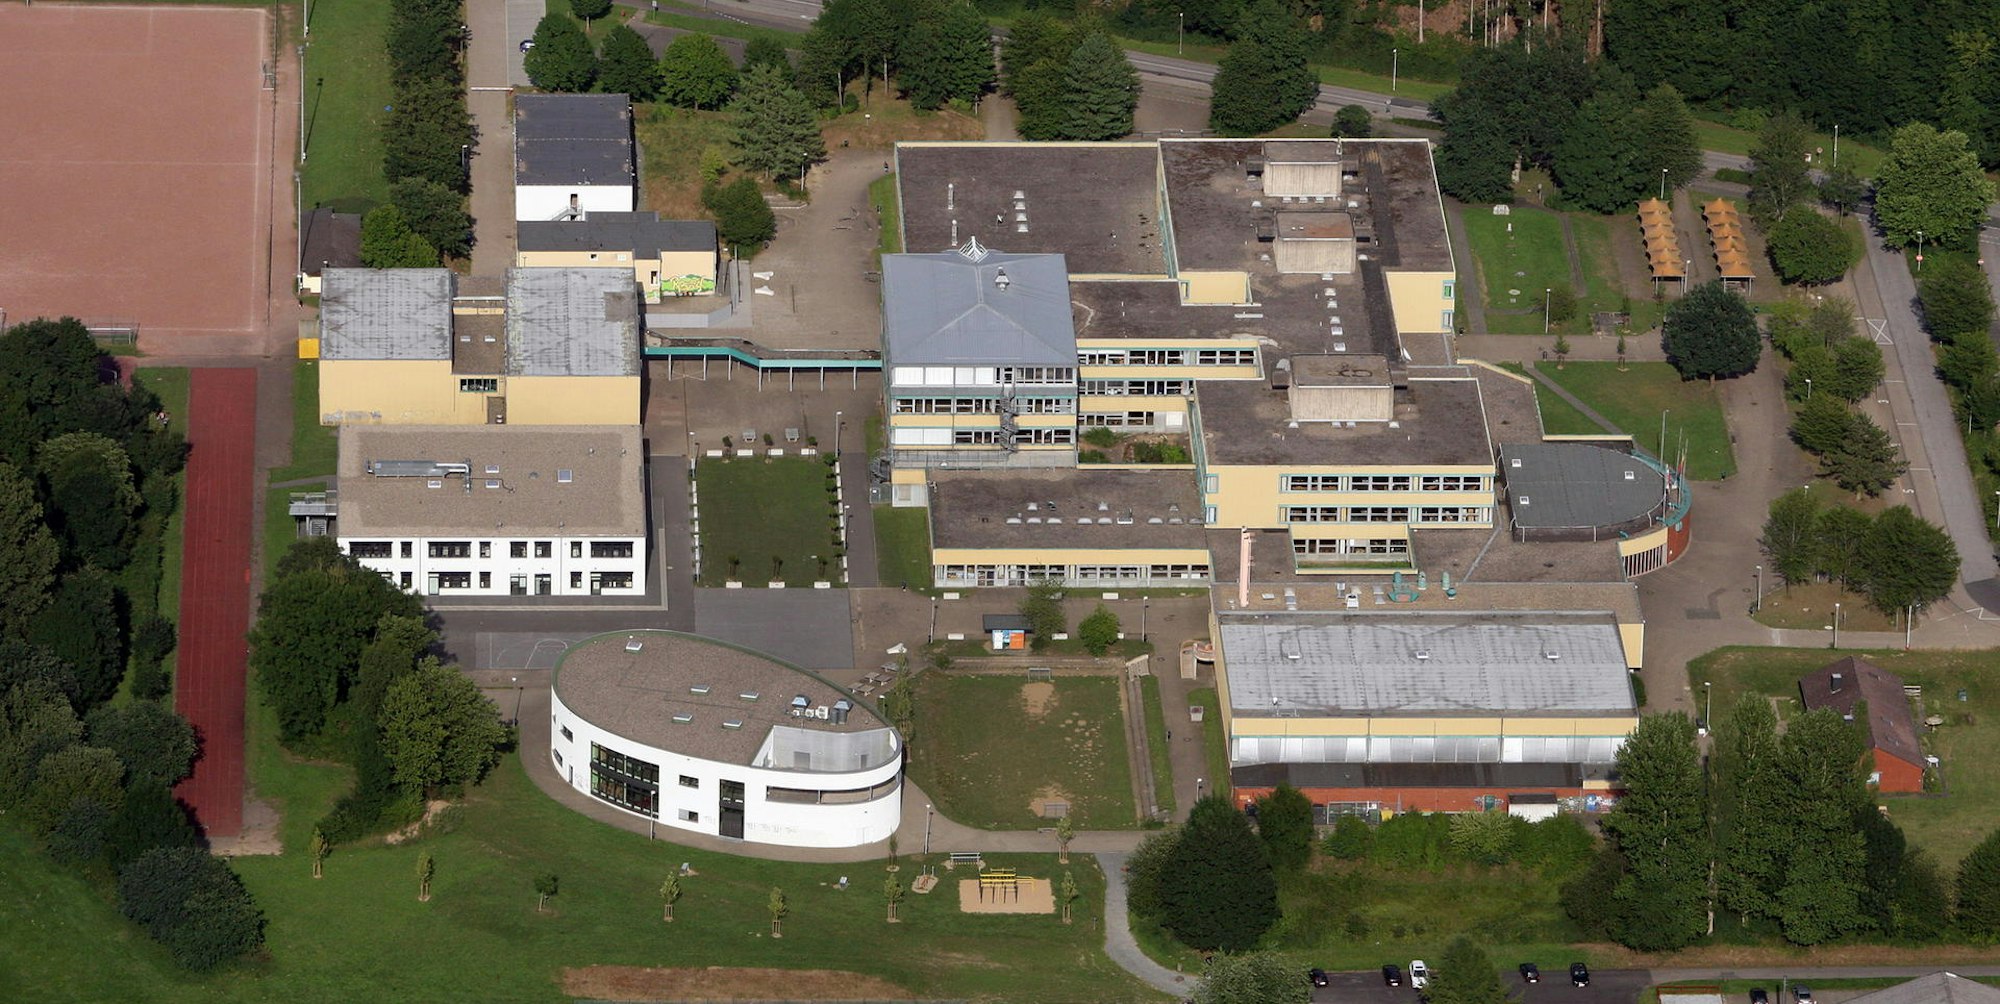 Das Schulzentrum Cyriax soll für viele Millionen Euro umgebaut werden.